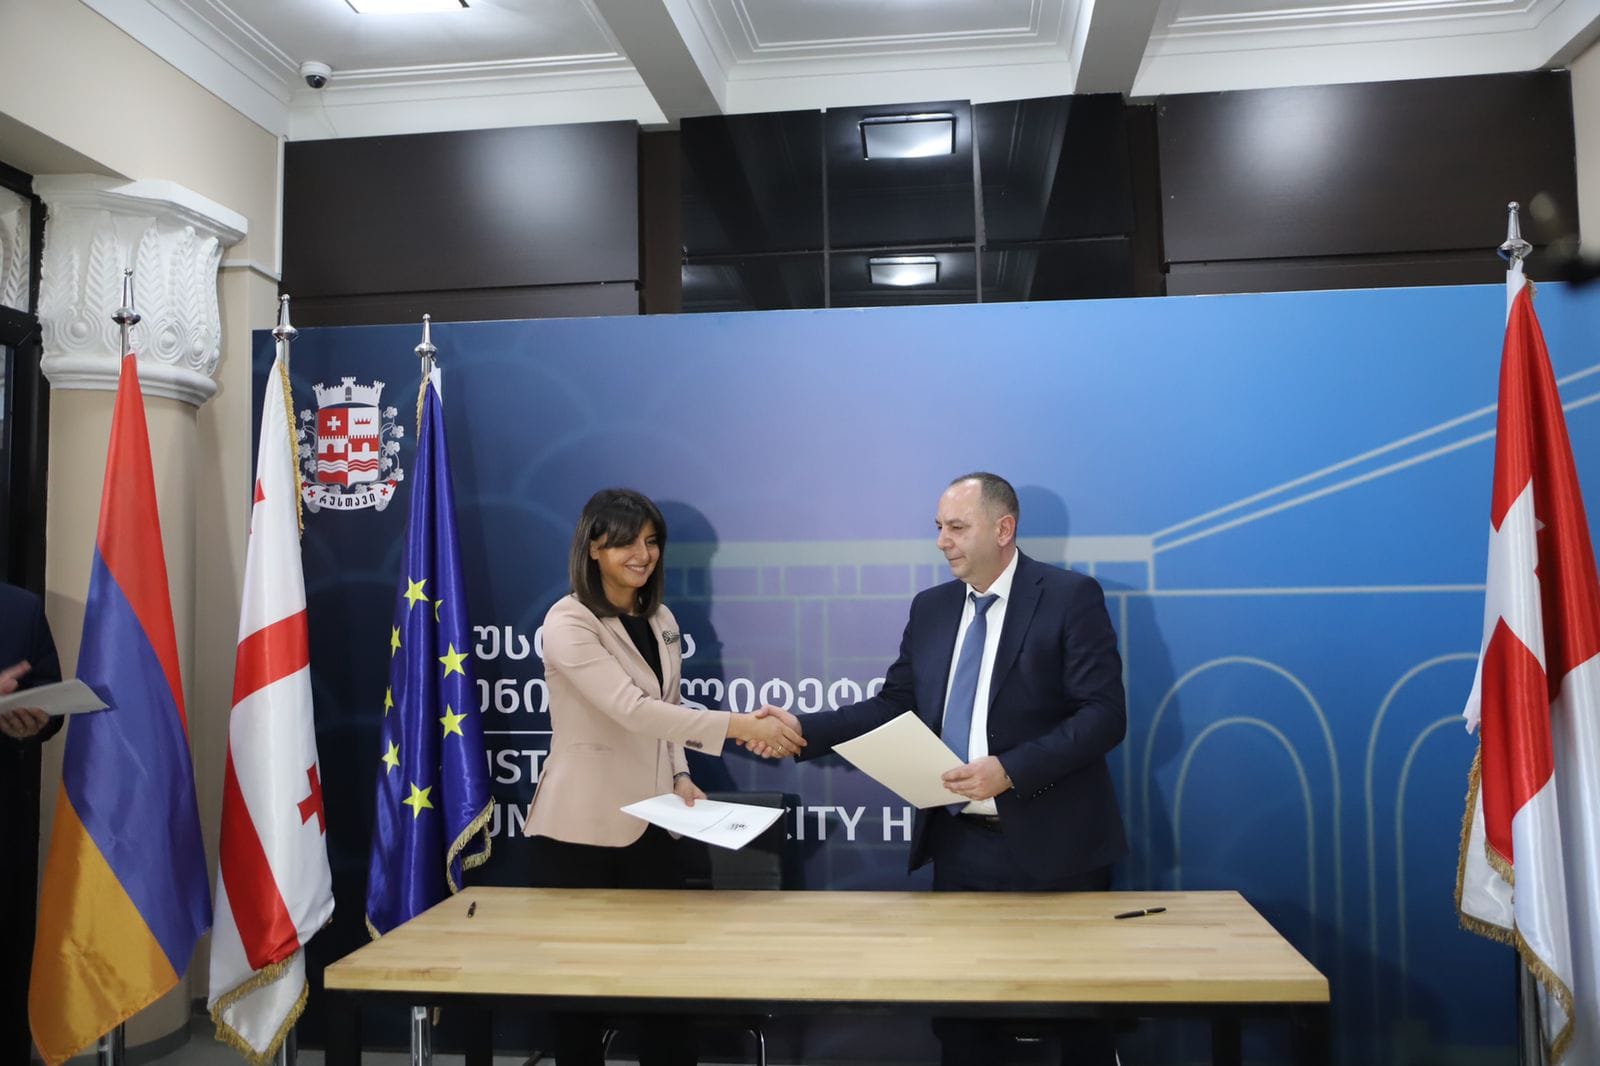 Իջևան և Վրաստանի Ռուսթավի քաղաքների միջև ստորագրվել է համագործակցության հուշագիր